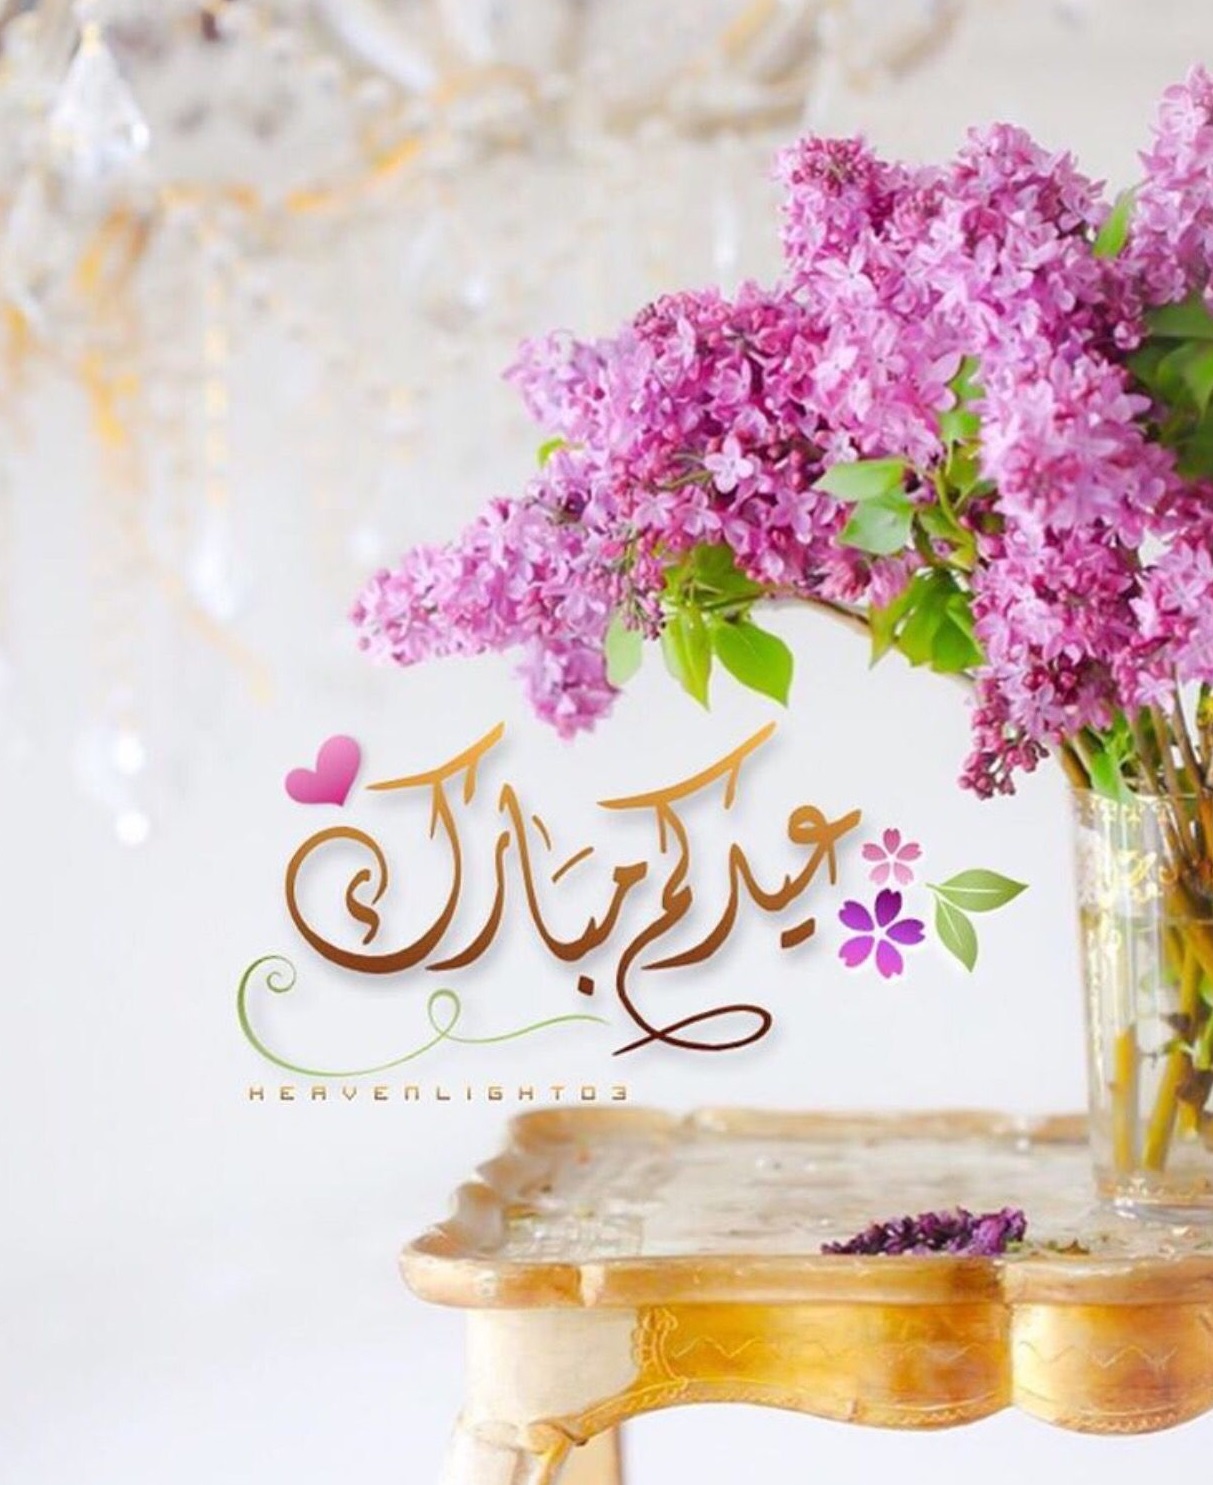 عيّد على حبايبك بأجمل عبارات رسائل تهنئة عيد الفطر المبارك 2021 للأصدقاء والأقارب وصور بطاقات المعايدة